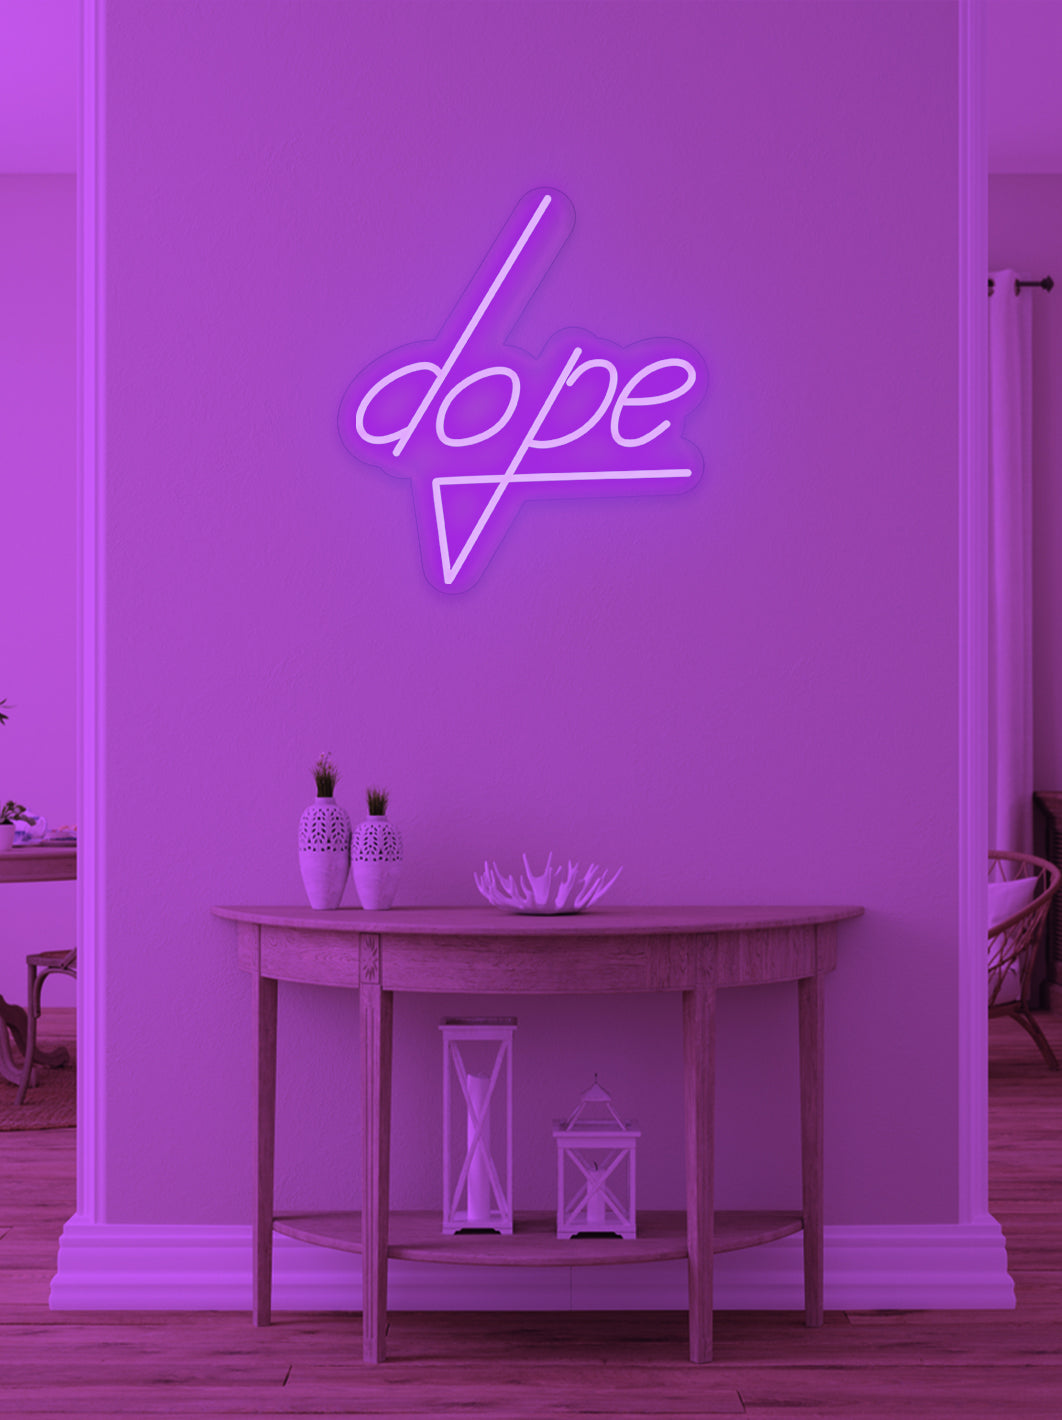 Dope - LED Neon skilt